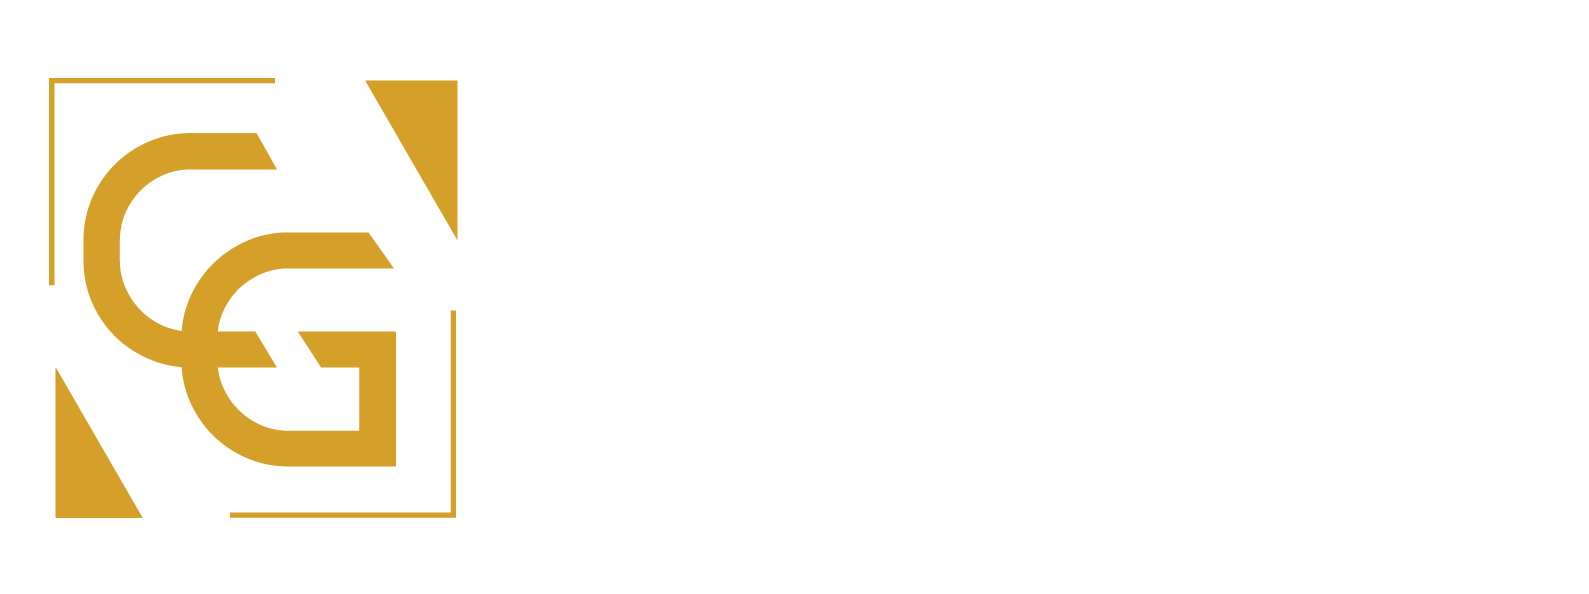 Batista, Castro e Gonçalves Advocacia